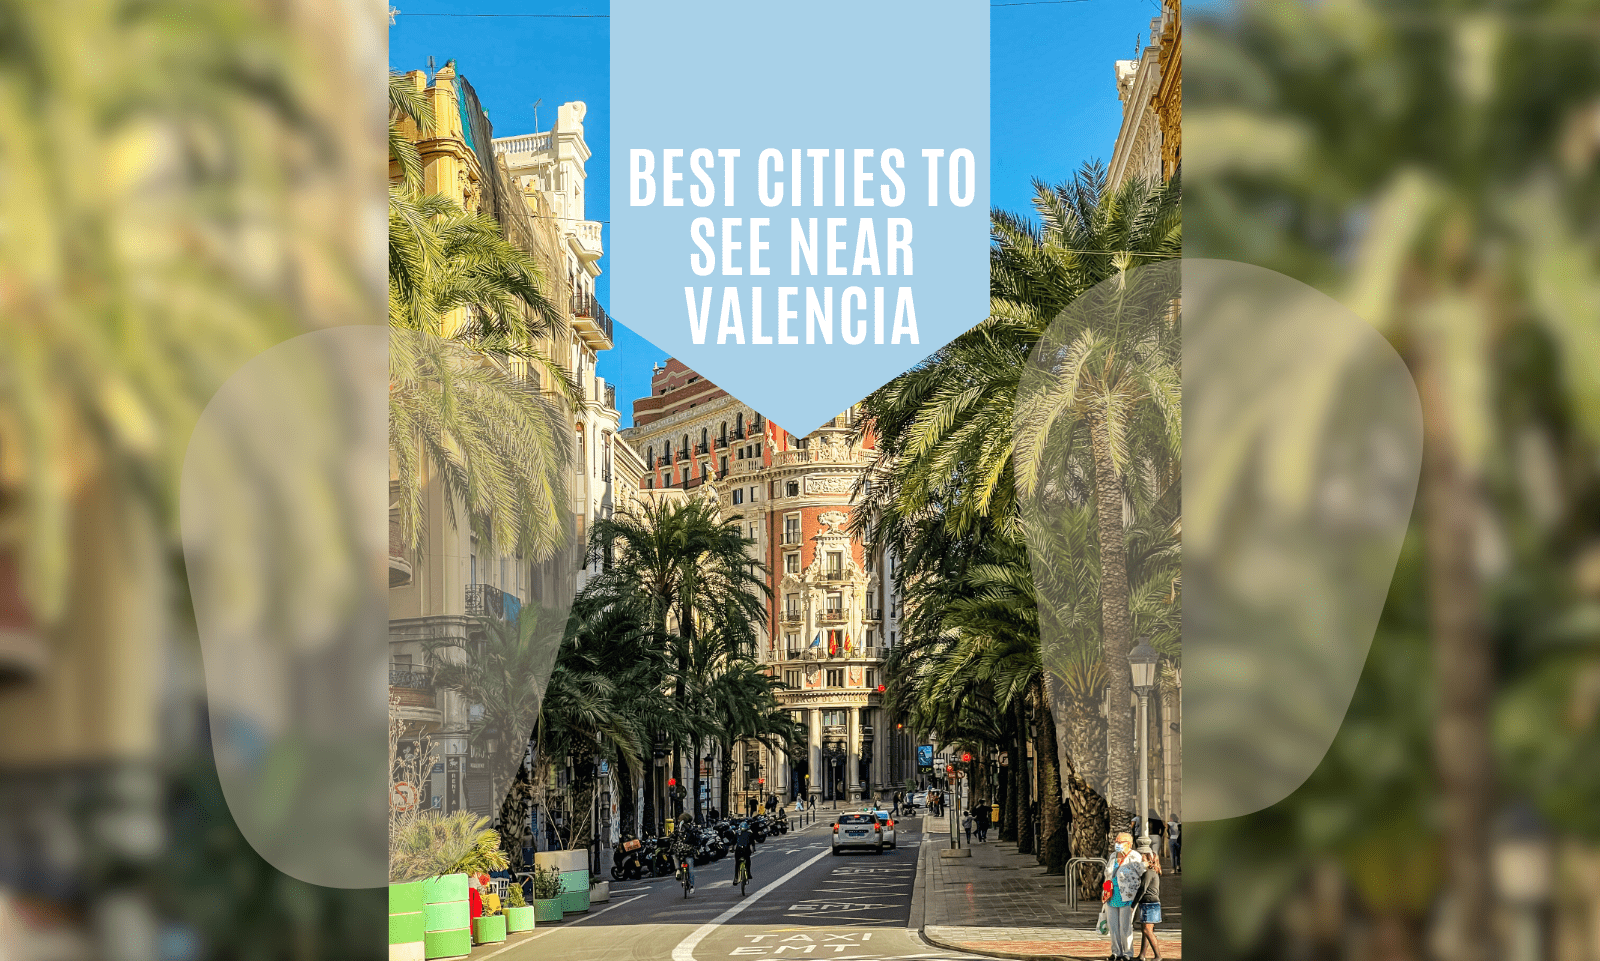 Les meilleures villes à visiter à Valence et dans les environs